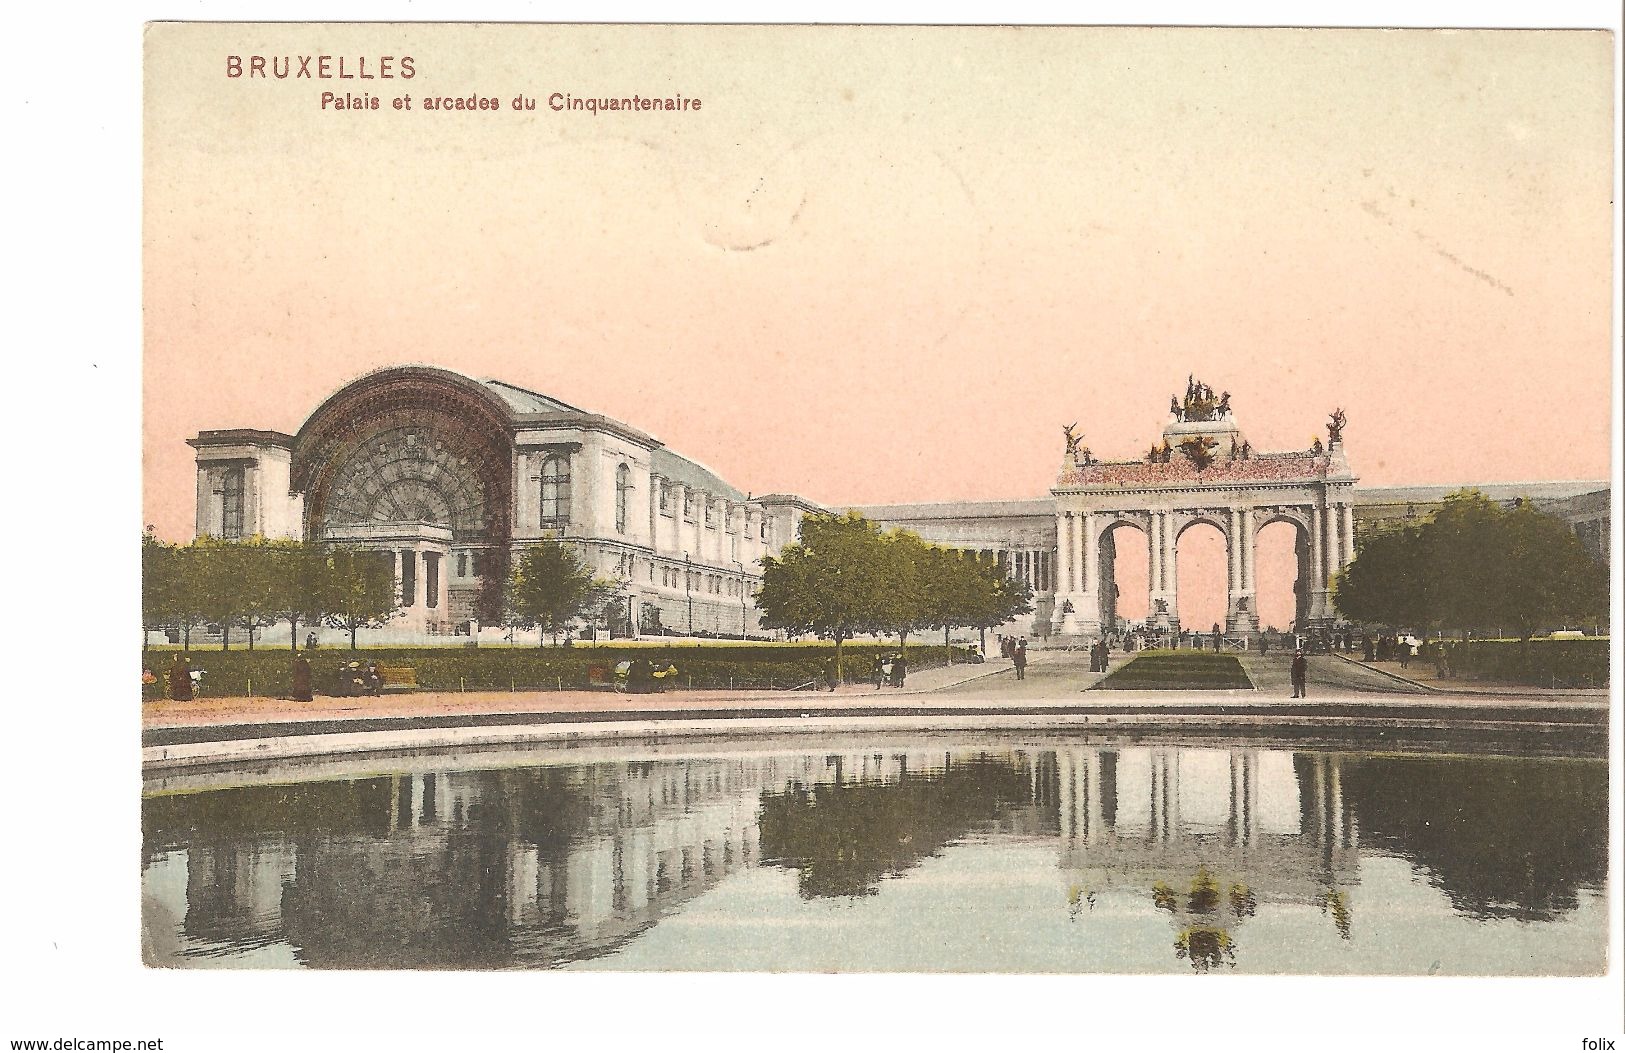 Bruxelles / Brussel - Palais Et Arcades Du Cinquantenaire - édition Trenkler & Co - 1909 - Colorisée - Forests, Parks